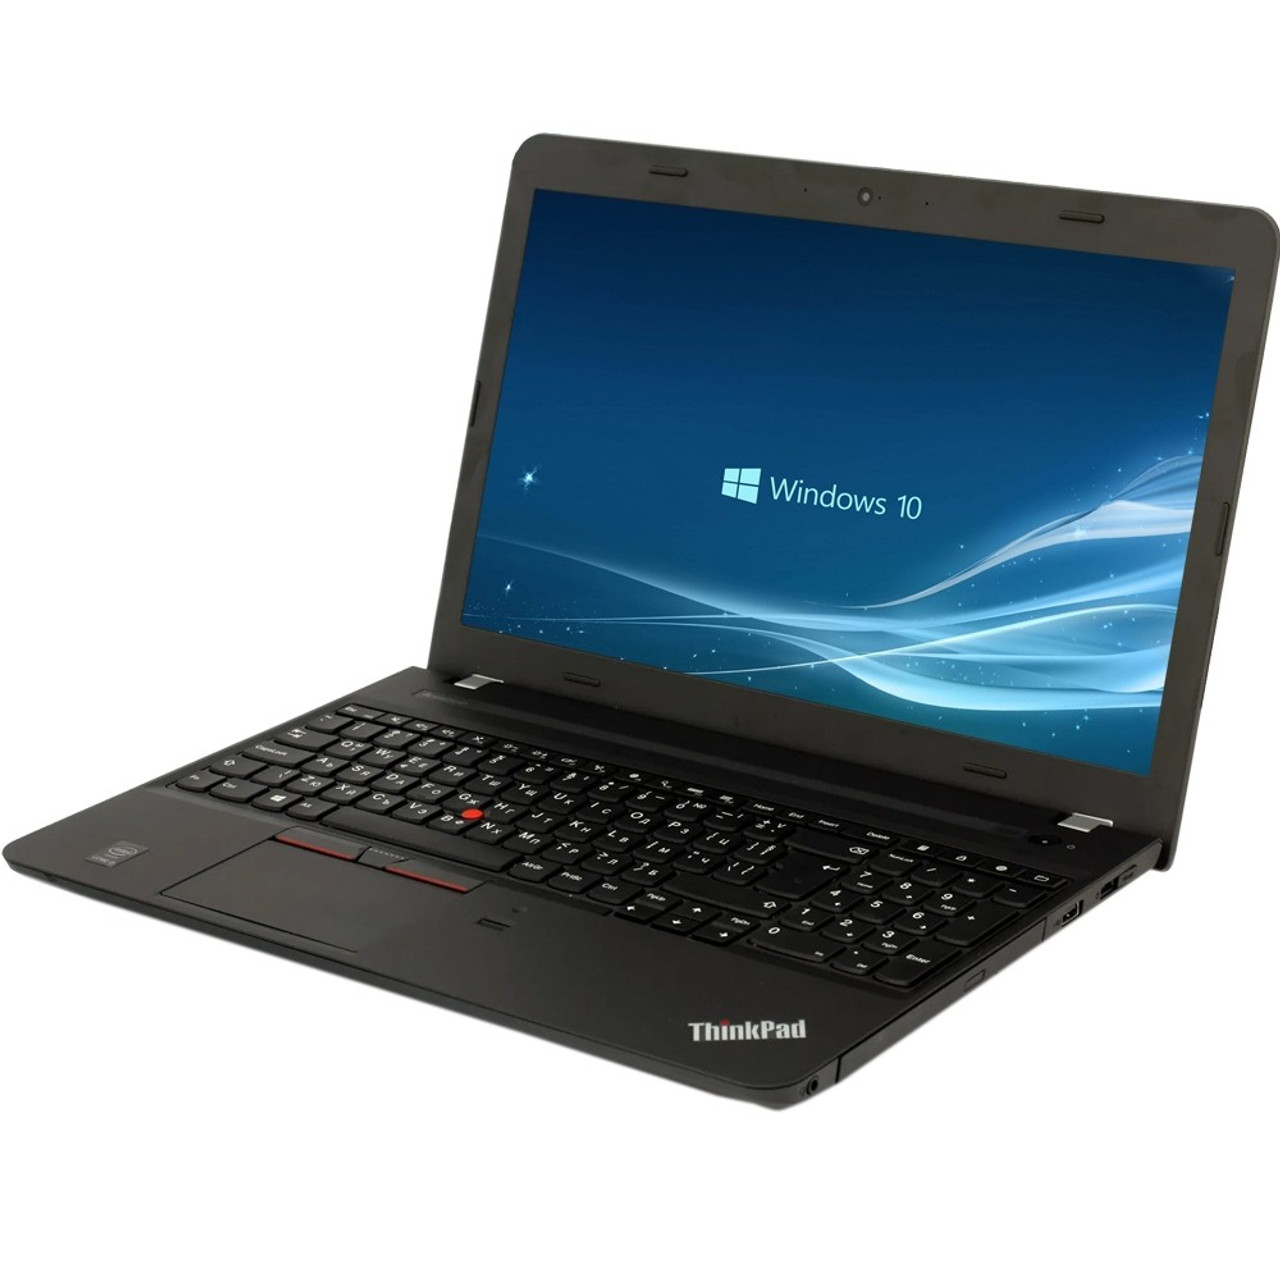 Lenovo Thinkpad E550 15.6